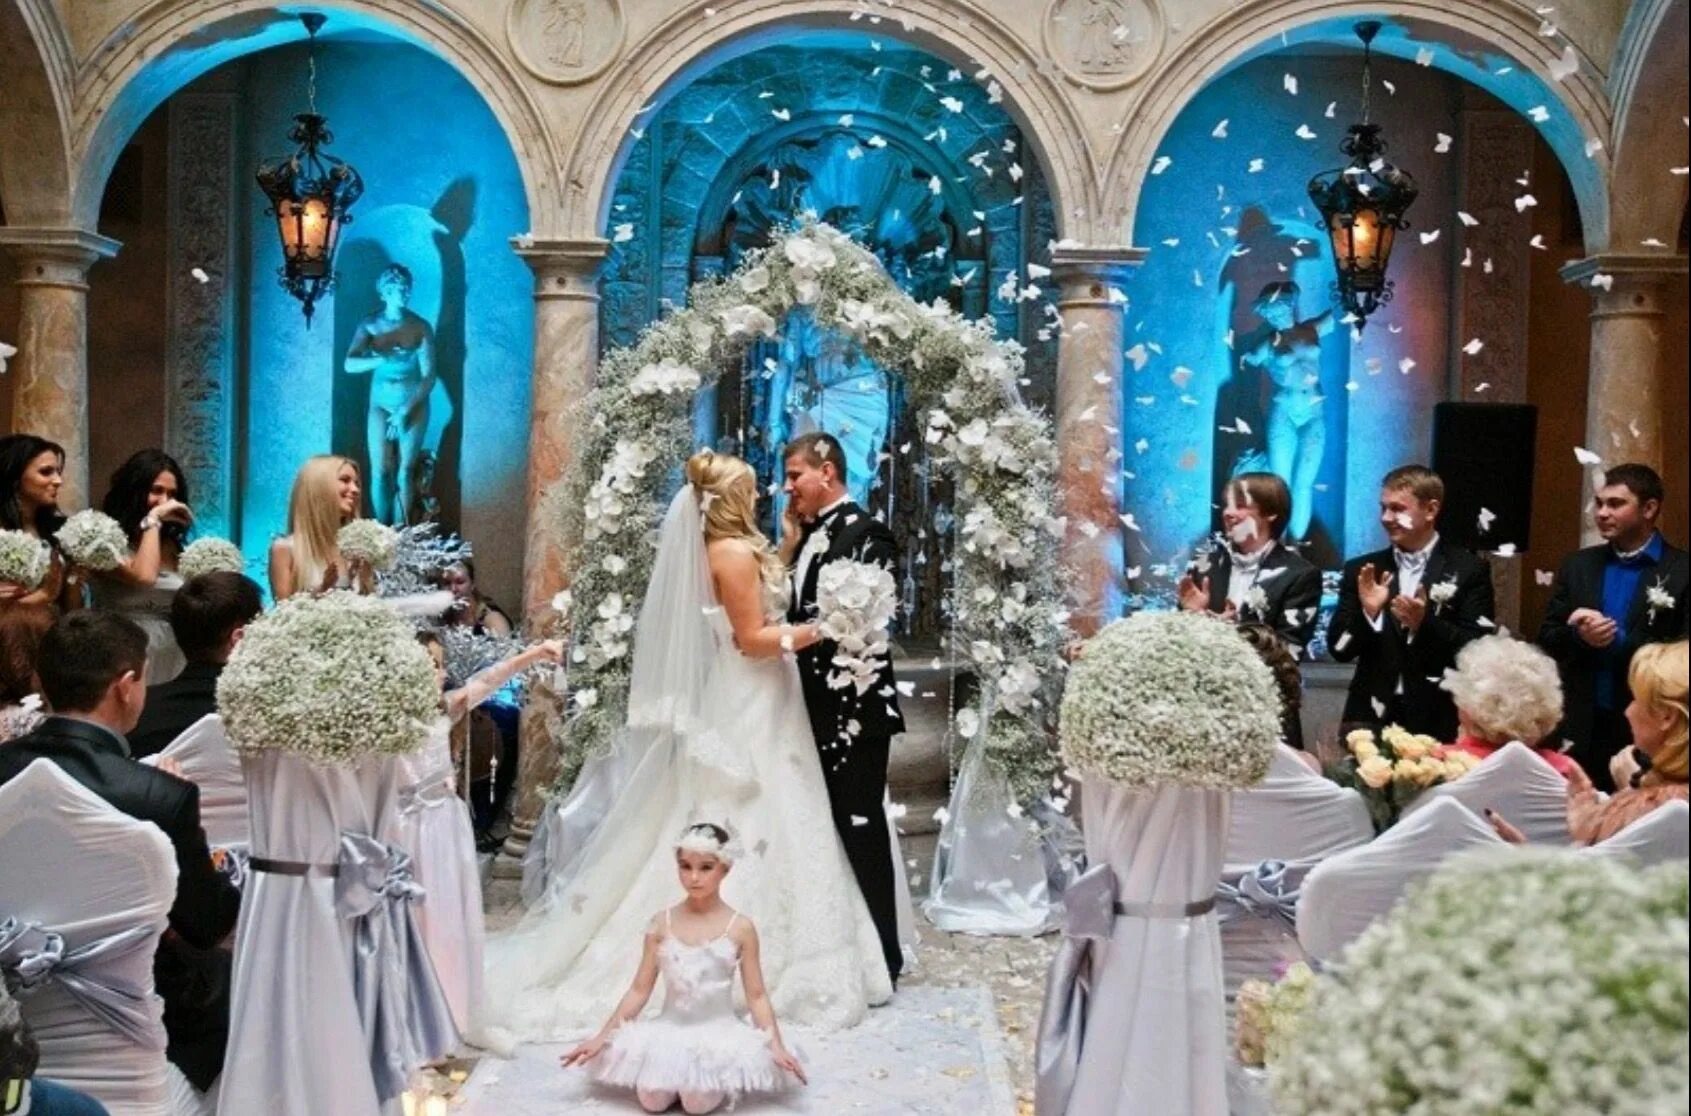 Недавно был на свадьбе. Свадьба в стиле зимняя сказка. Свадьба в сказочном стиле. Свадьба в стиле сказки. Шикарная свадьба.